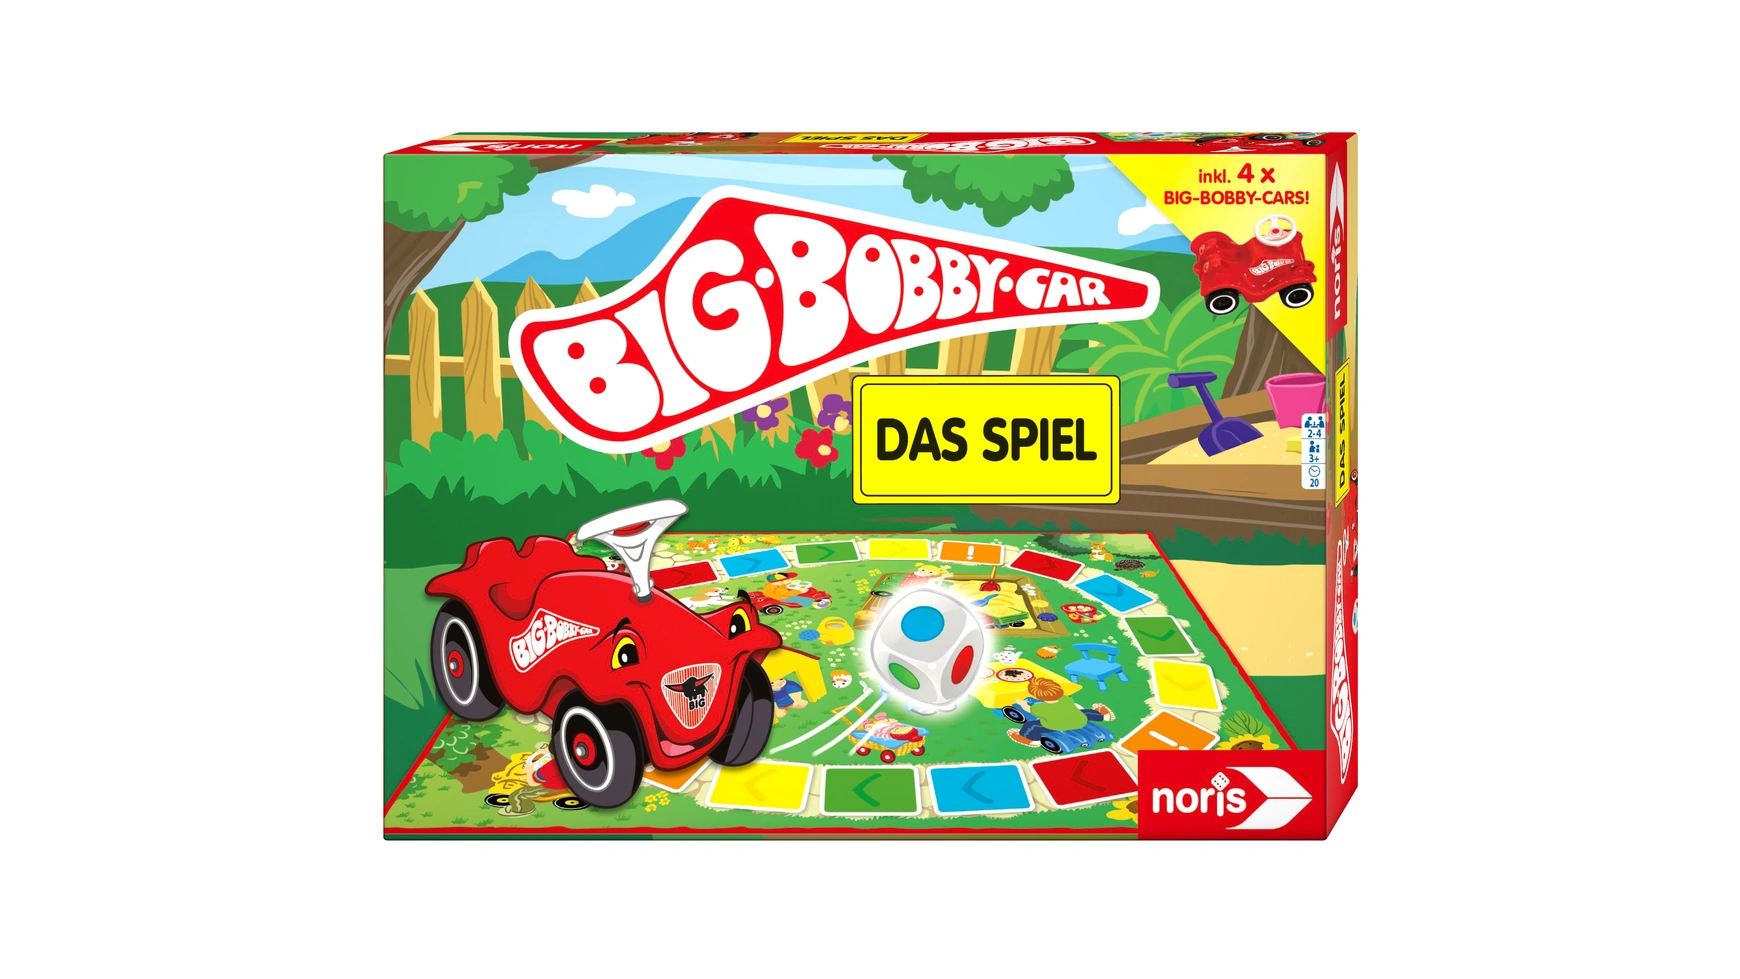 big прицеп bobby car красный Big bobby car игра Noris Spiele